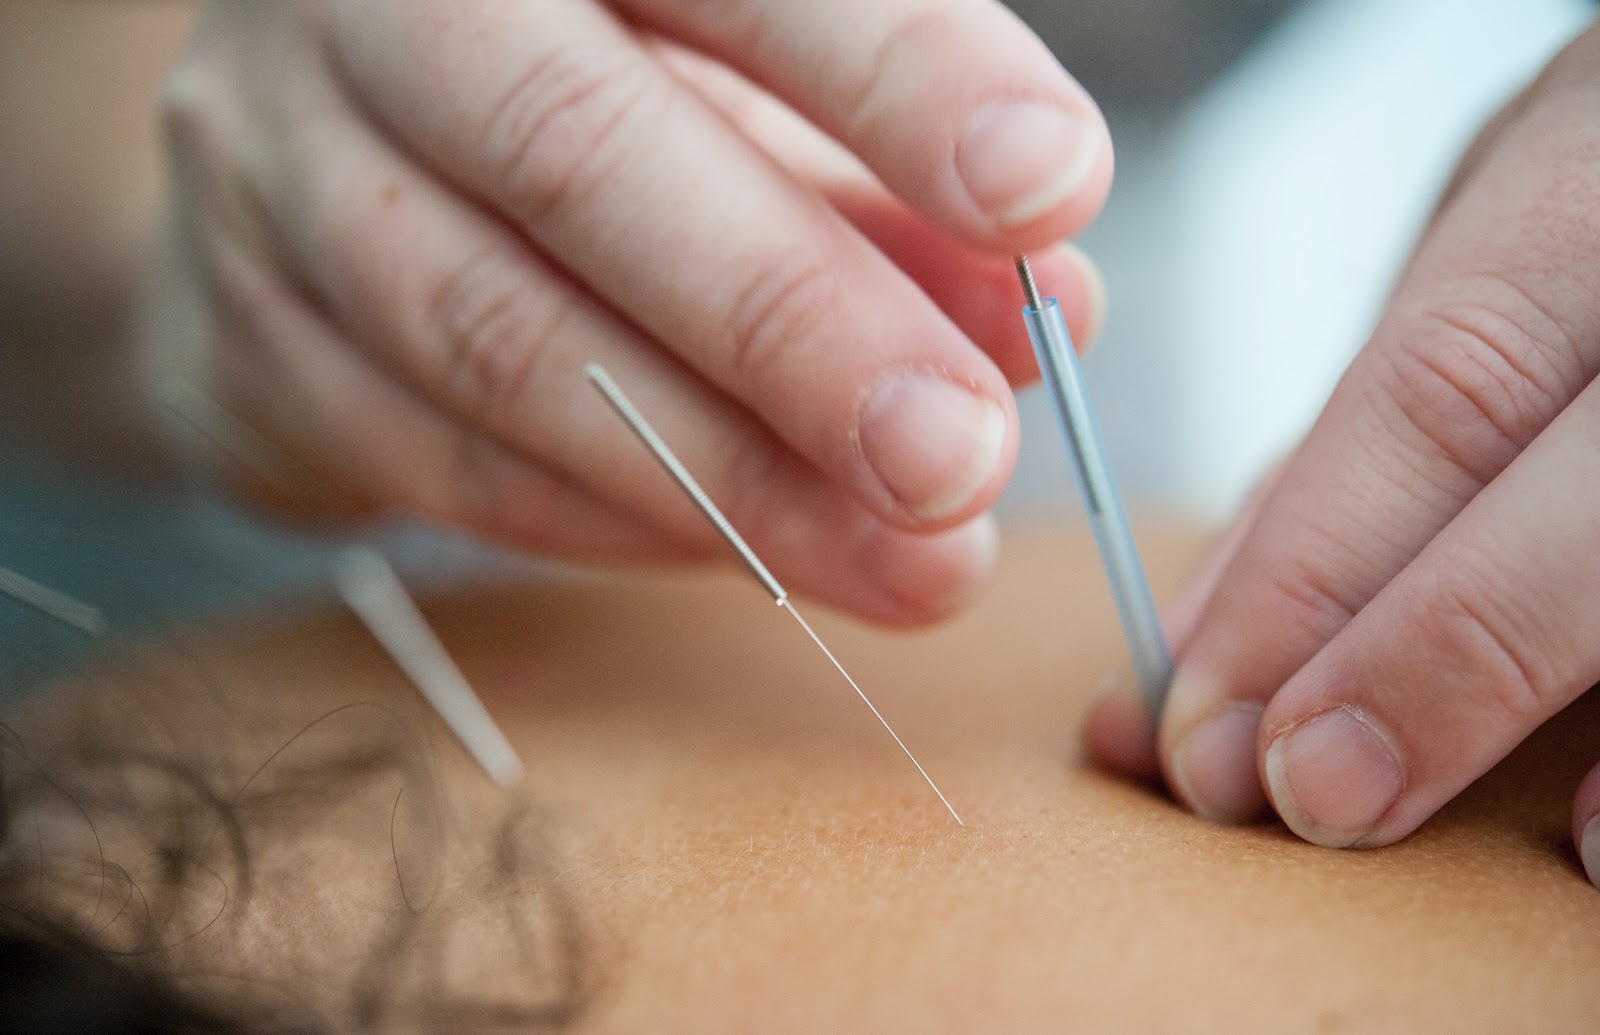 arthritis pain relief: acupuncture